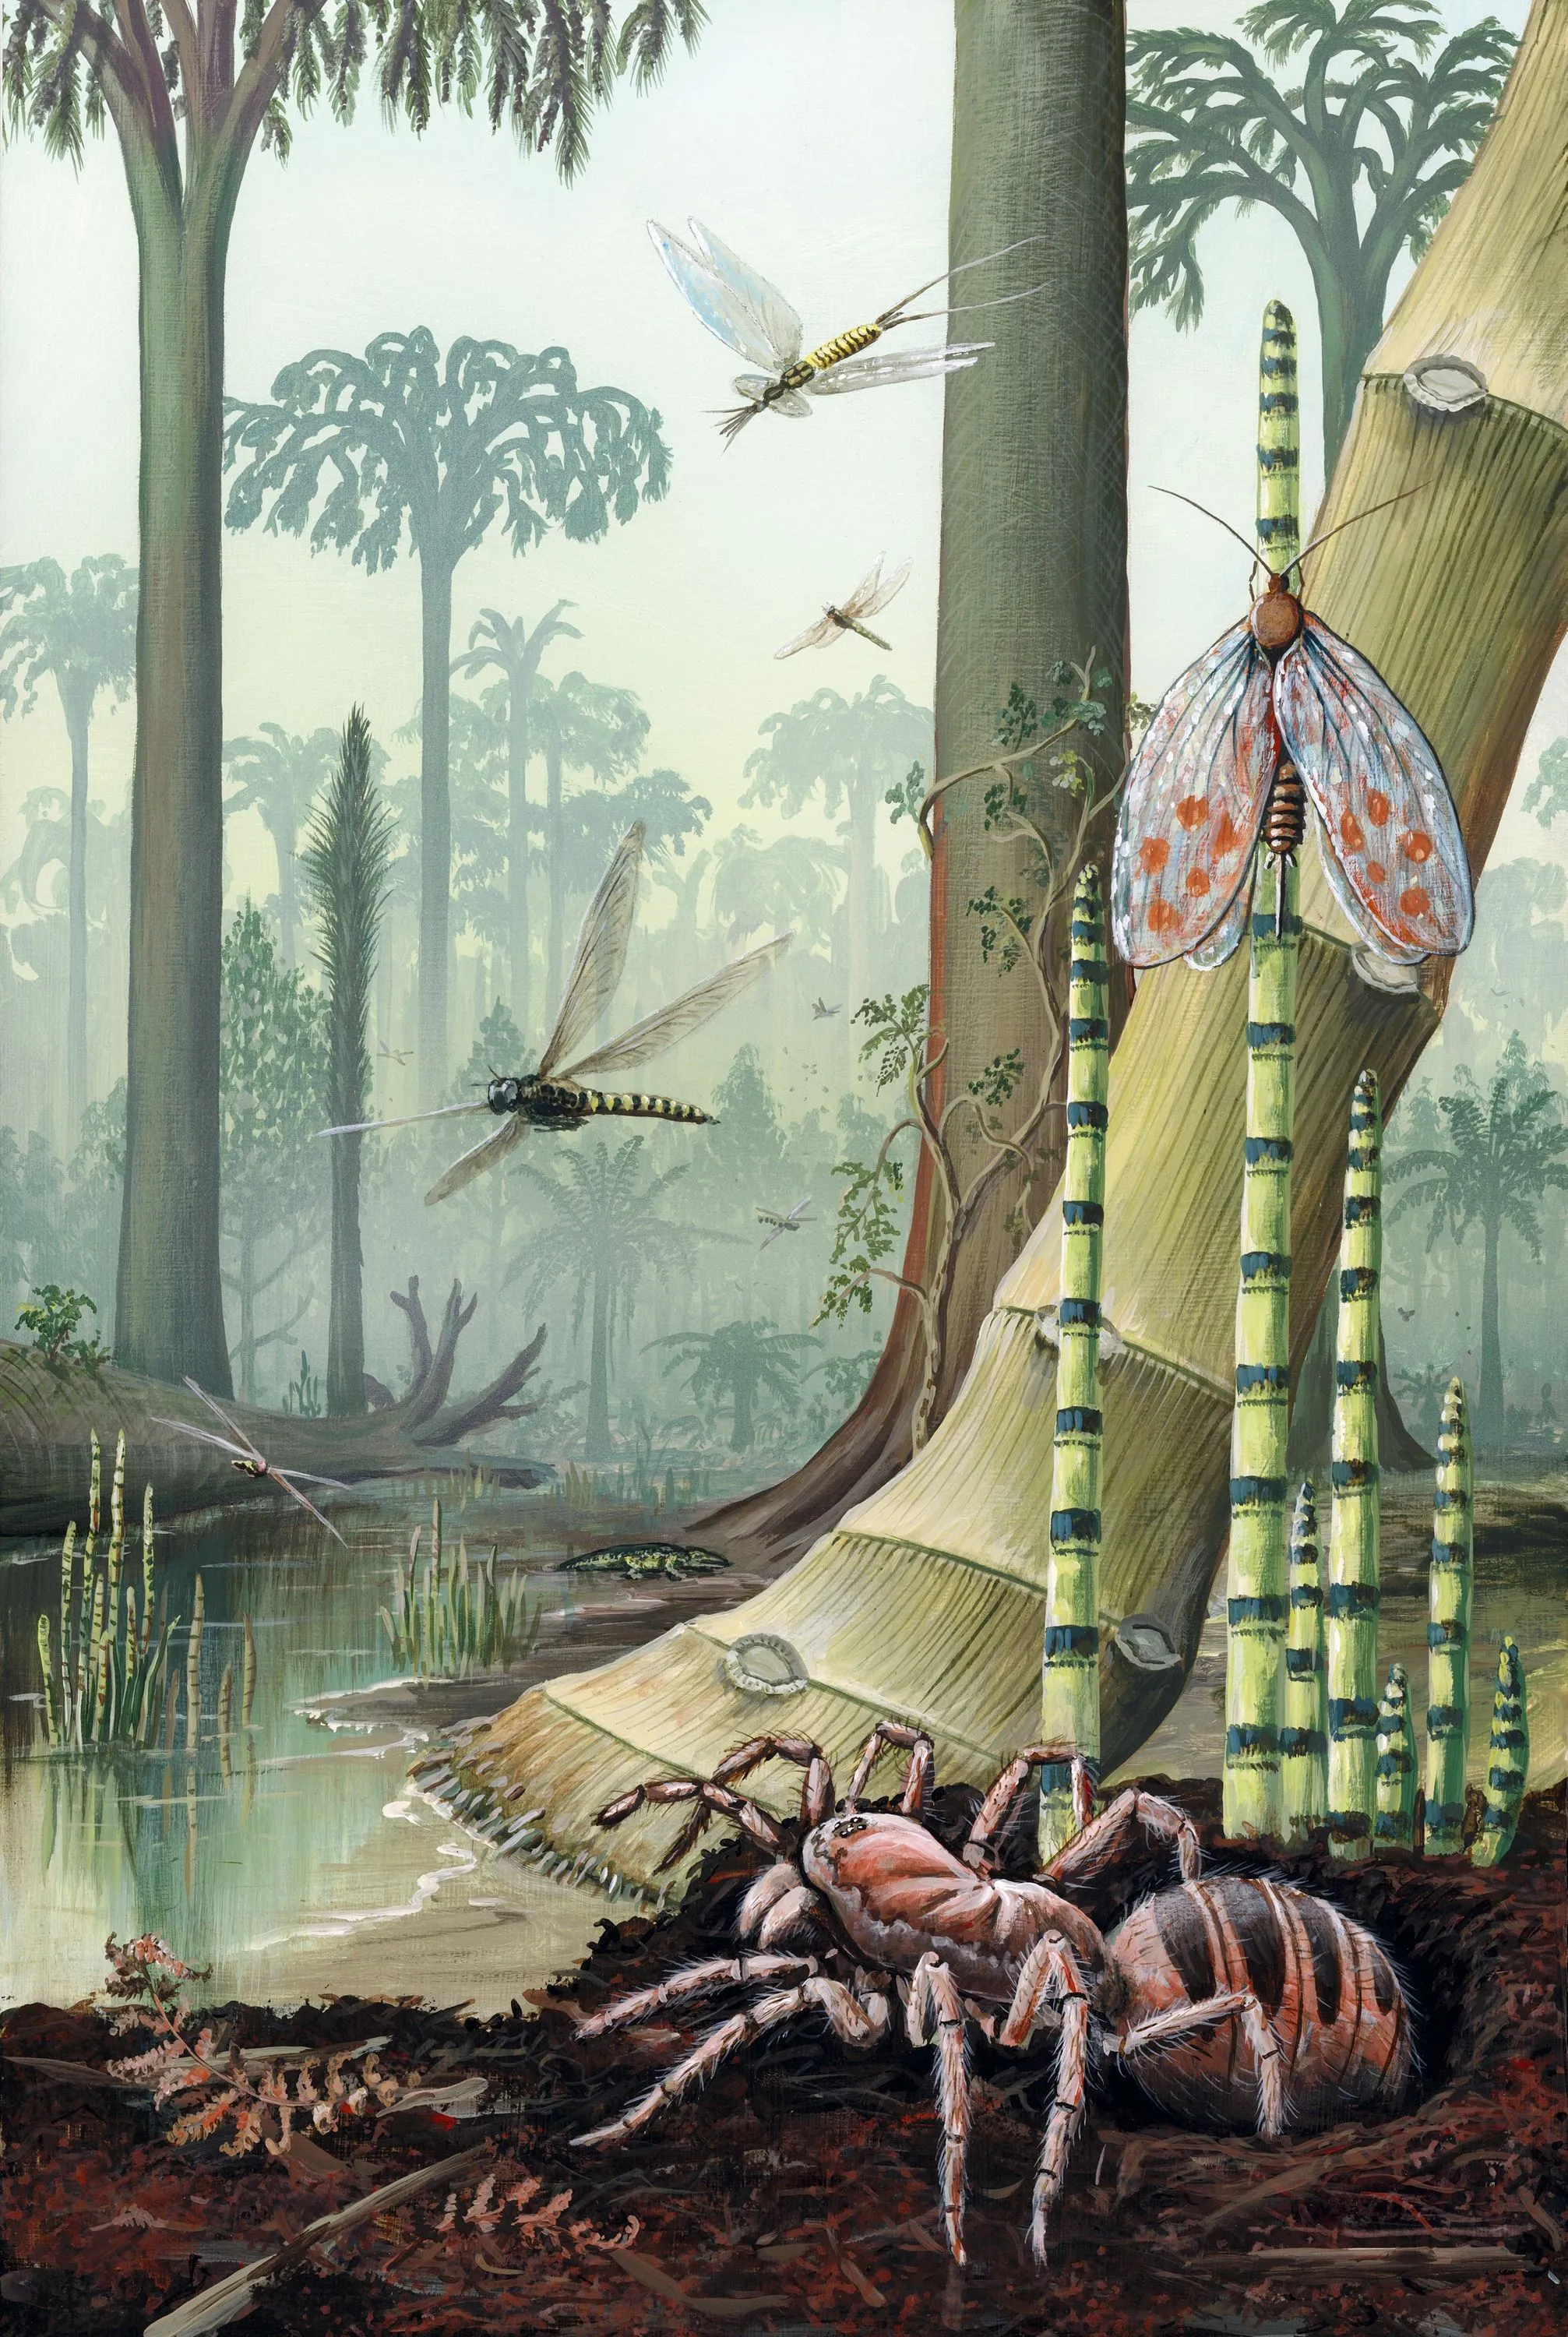 Un paysage de forêt tropicale humide reconstitué d'après les fossiles retrouvés.